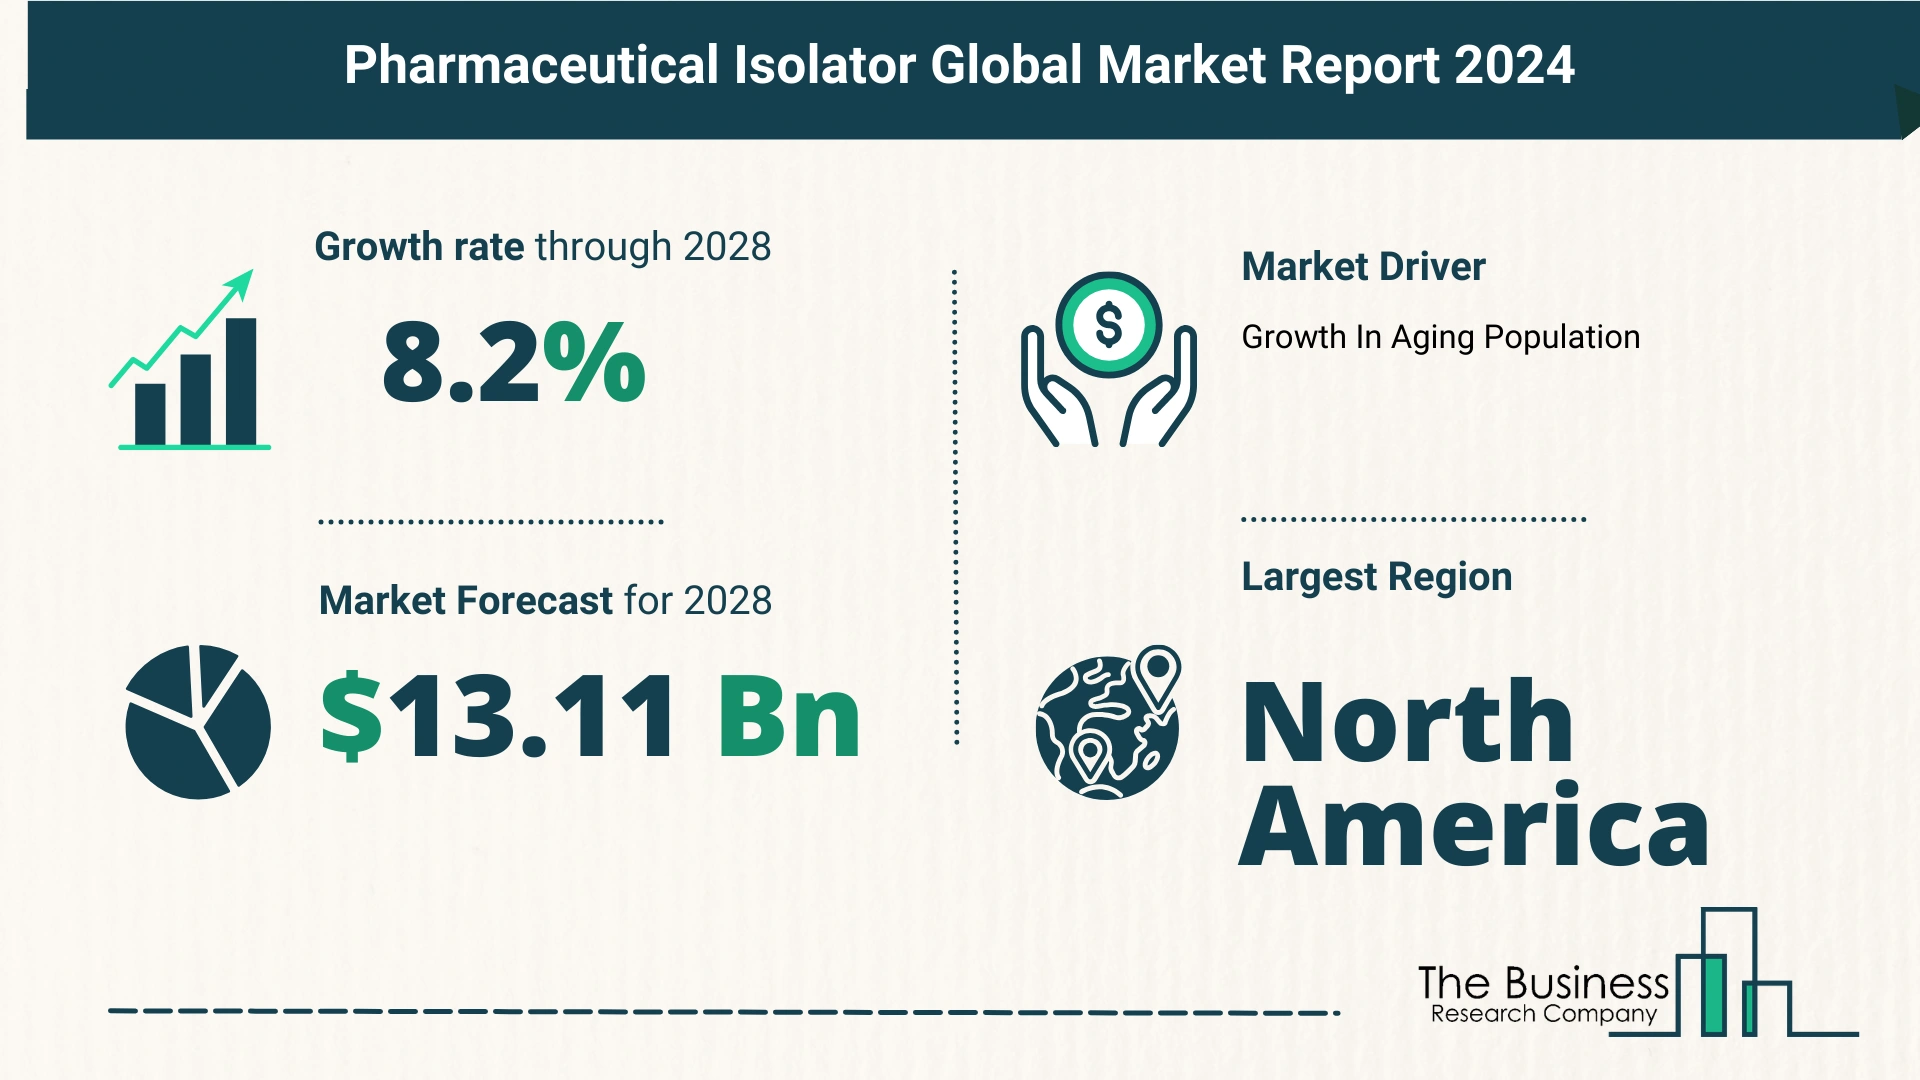 Global Pharmaceutical Isolator Market Size